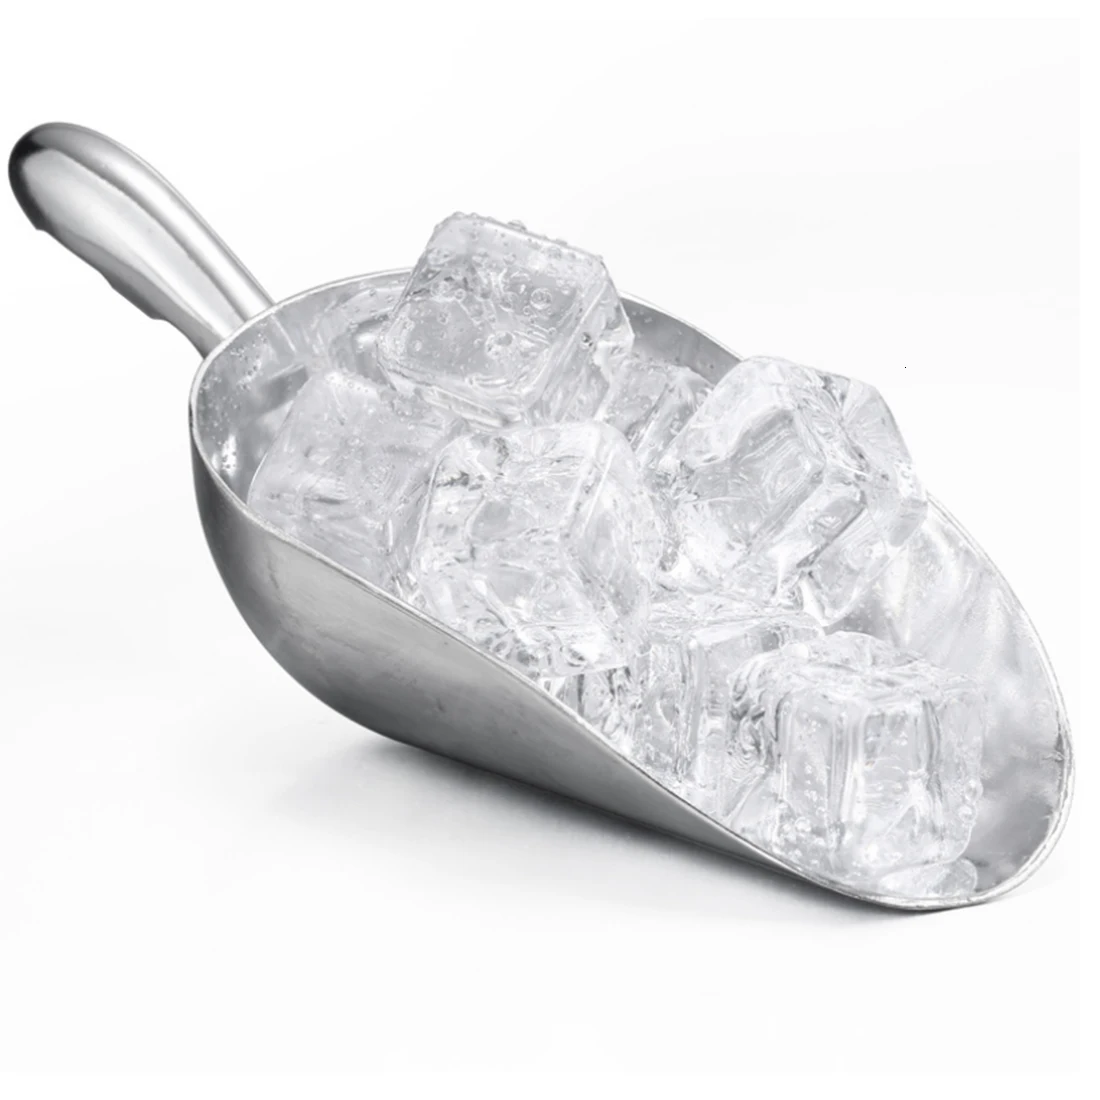 ITECHOR 5 шт Многофункциональный алюминиевый сплав 6 унций бар совок для льда Лопата пищевая чайная ложка для сахара для супермаркета бар-серебро